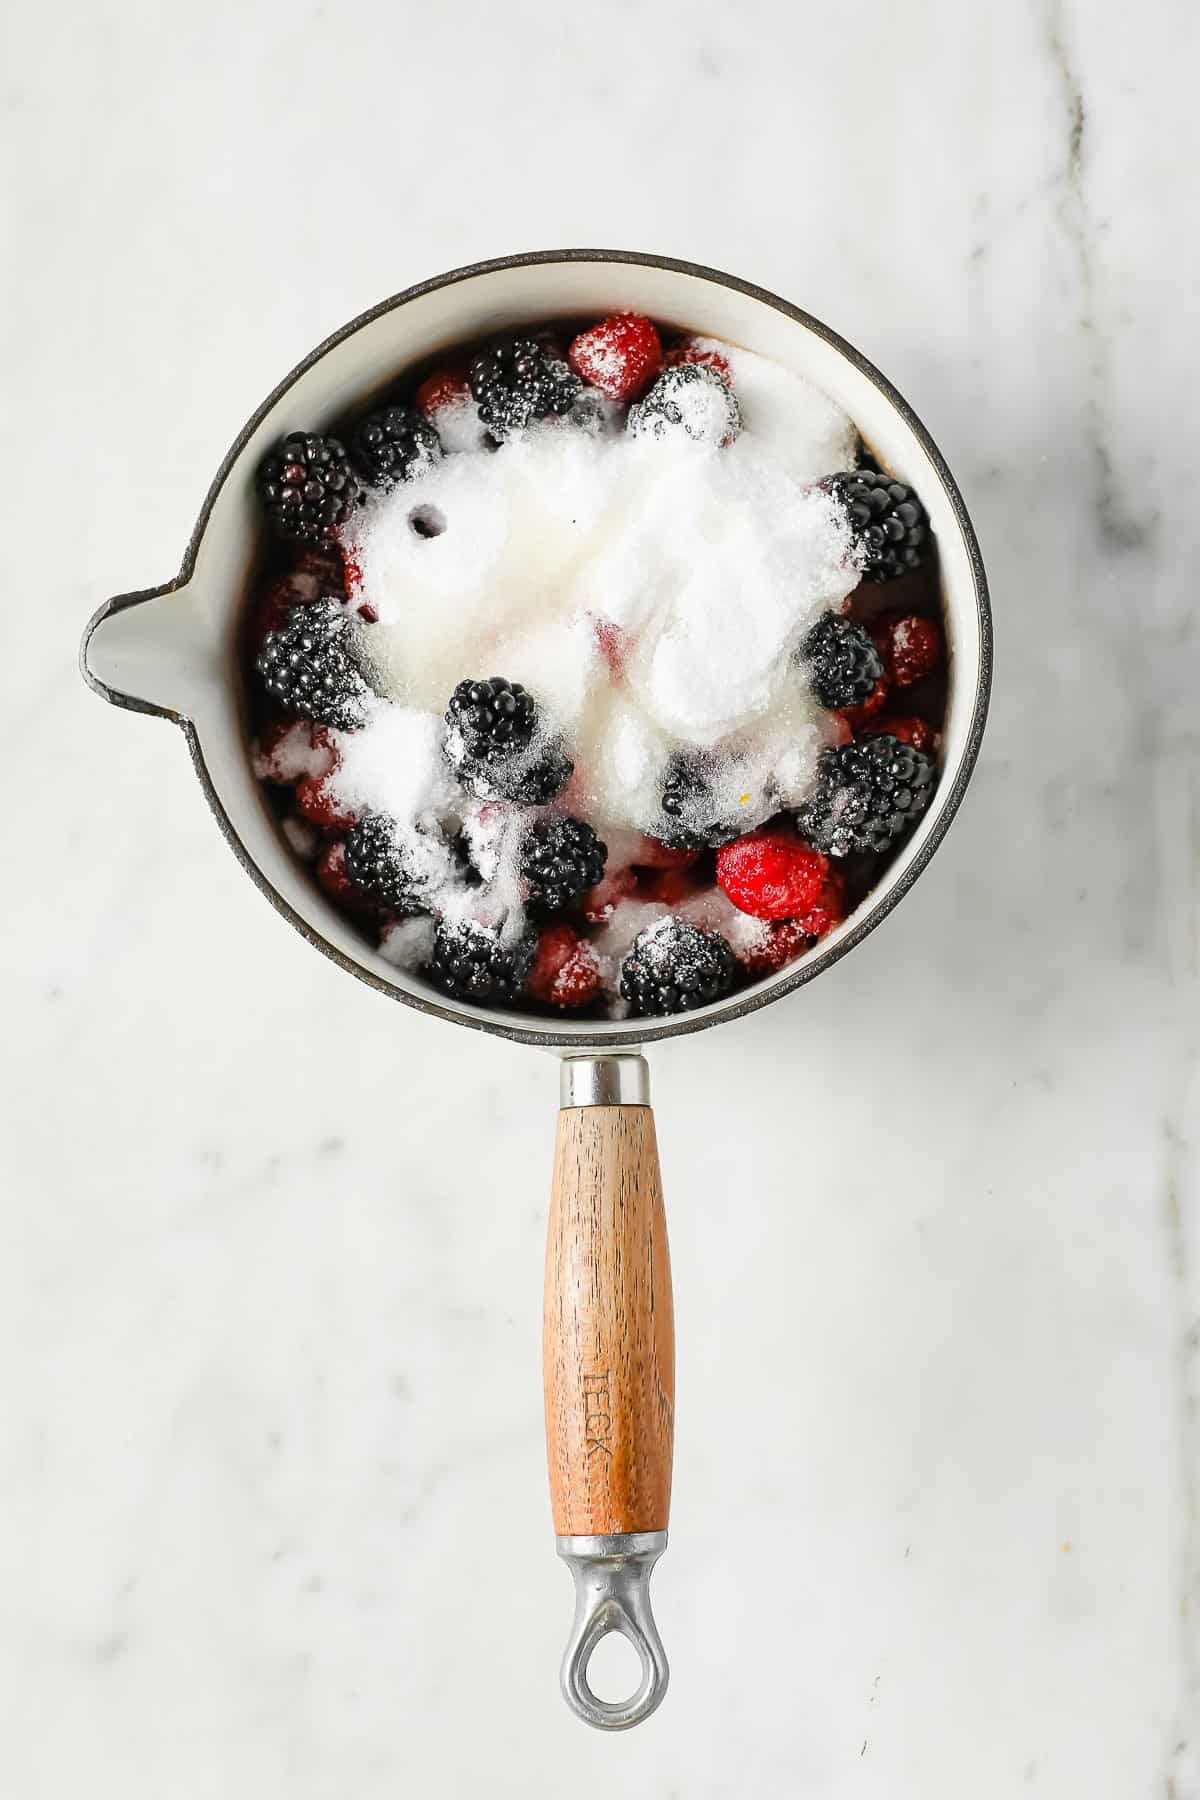 strawberries, raspberries, blackberries, sweetener, and lemon juice in a sauce pan